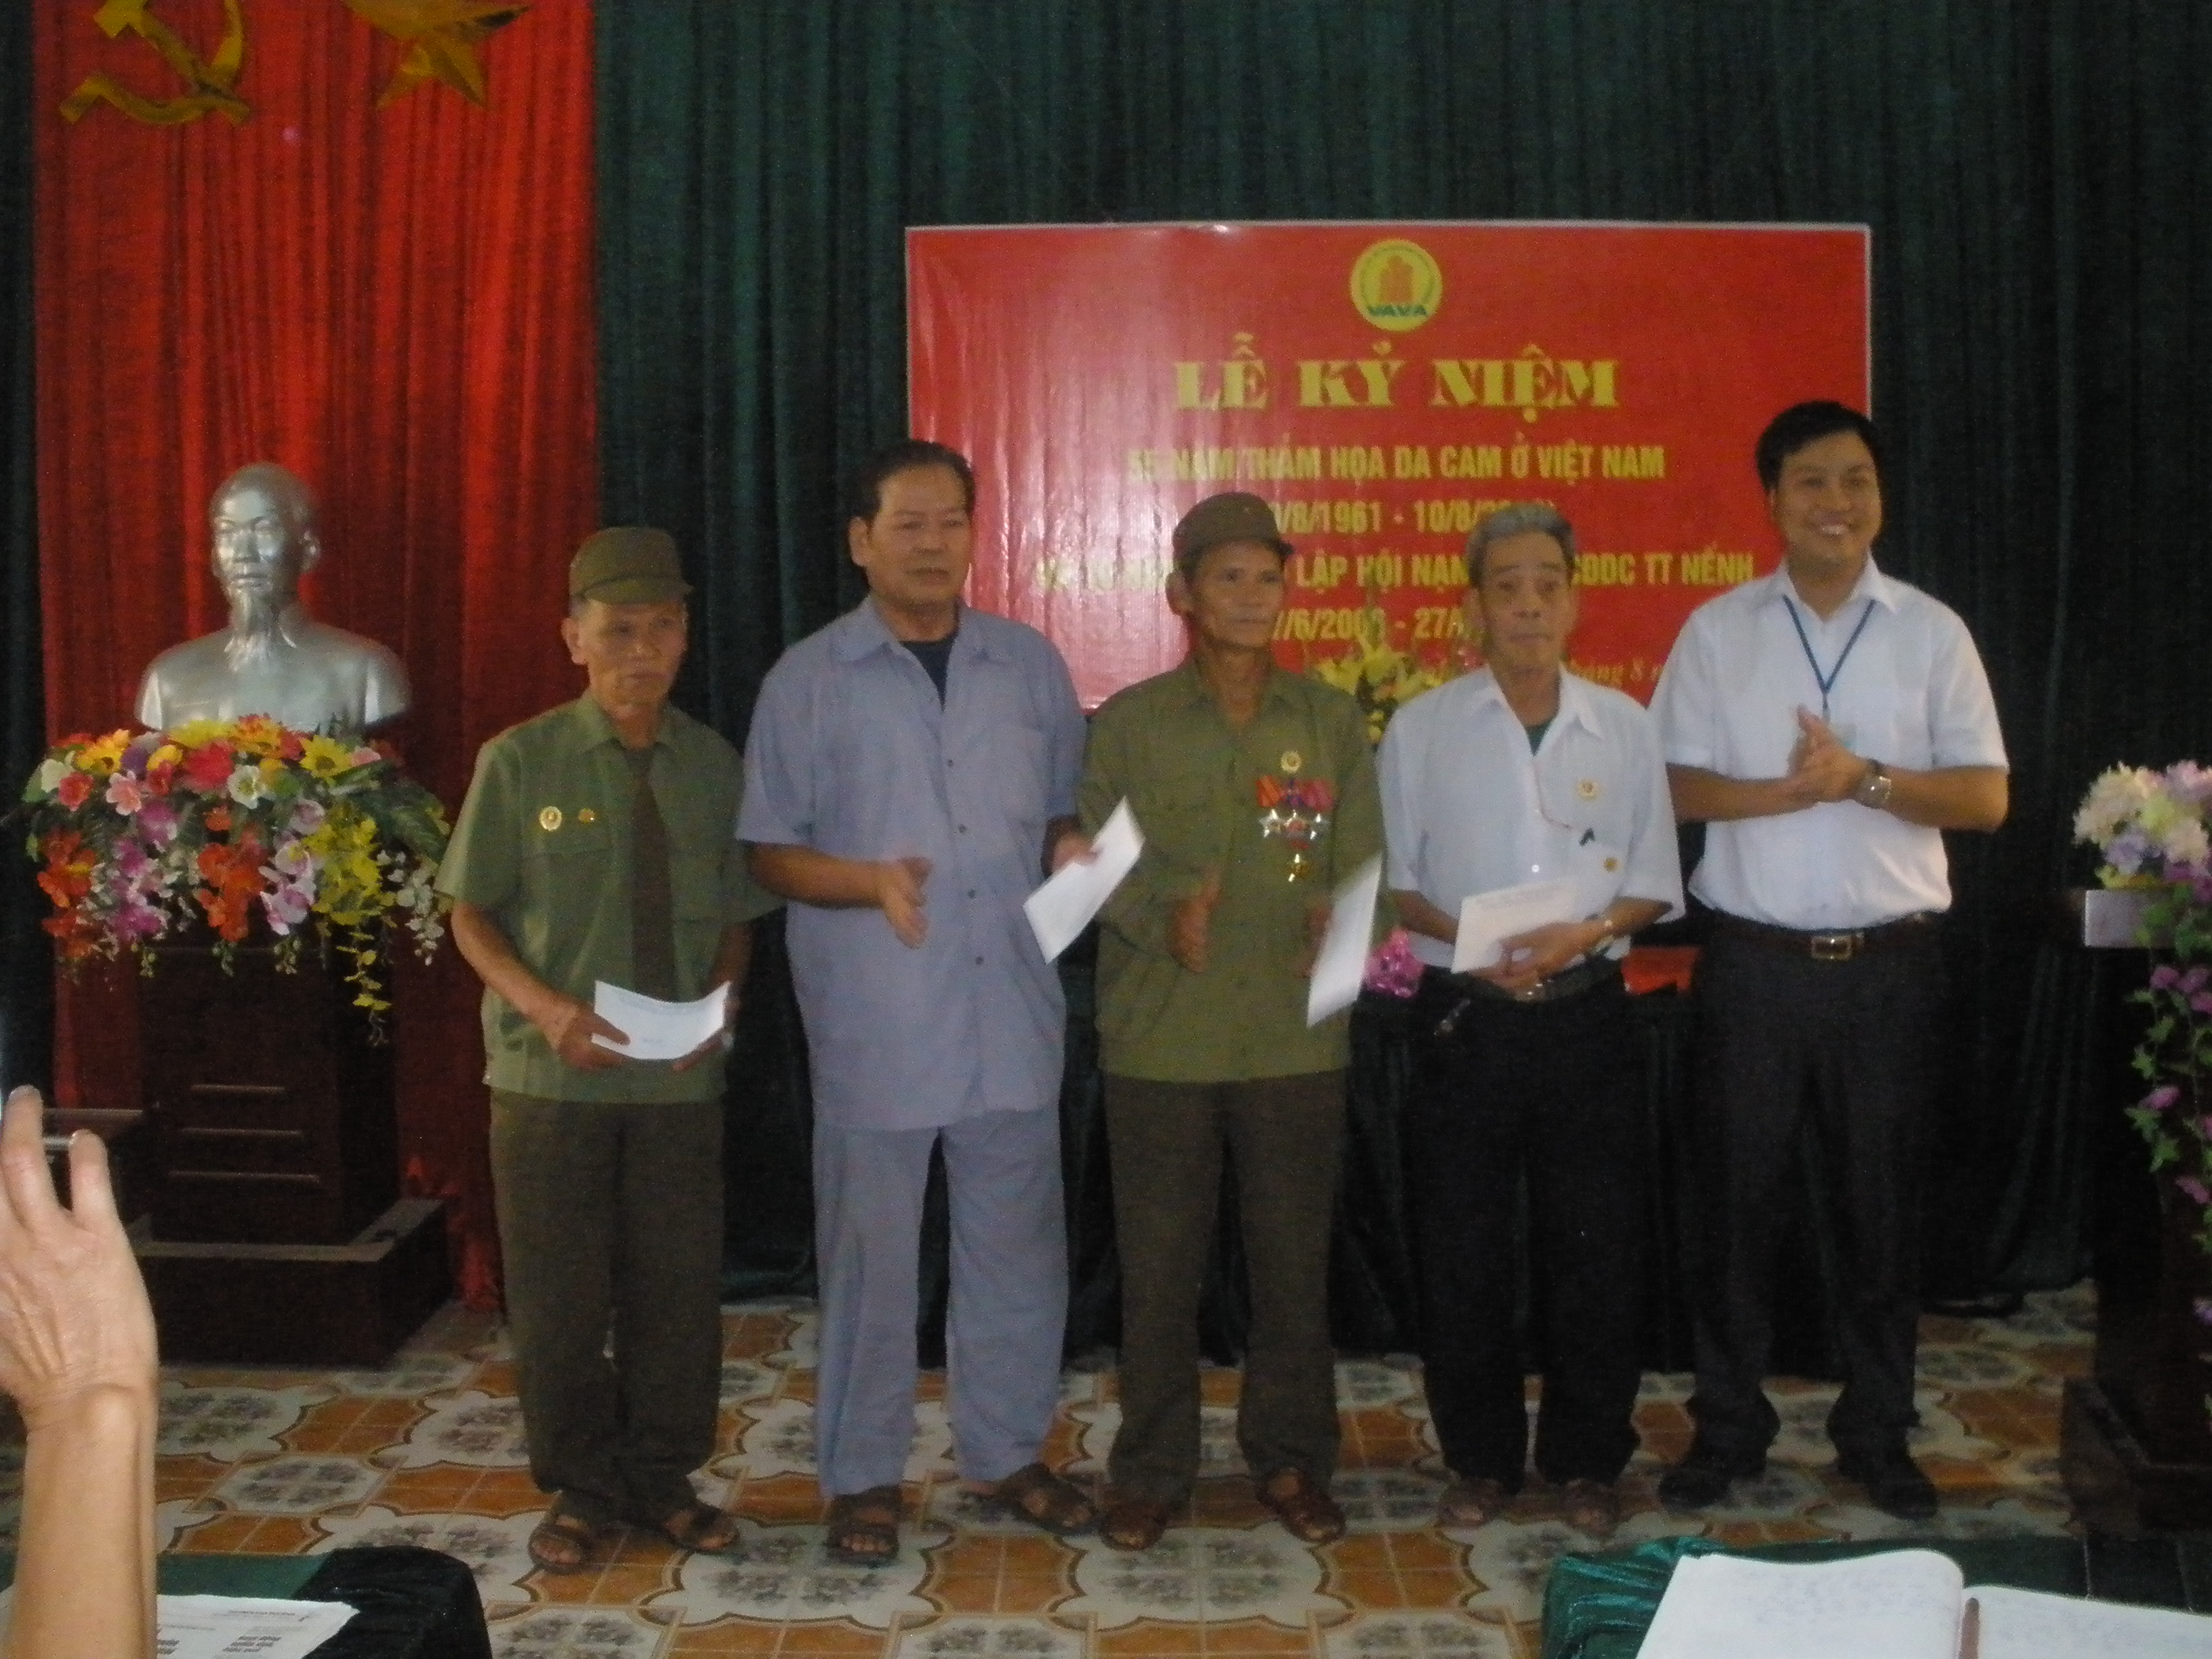 Hội nạn nhân chất độc da cam Điôxin Thị trấn Nếnh tổ chức lễ kỷ niệm ngày thảm họa da cam ở Việt...